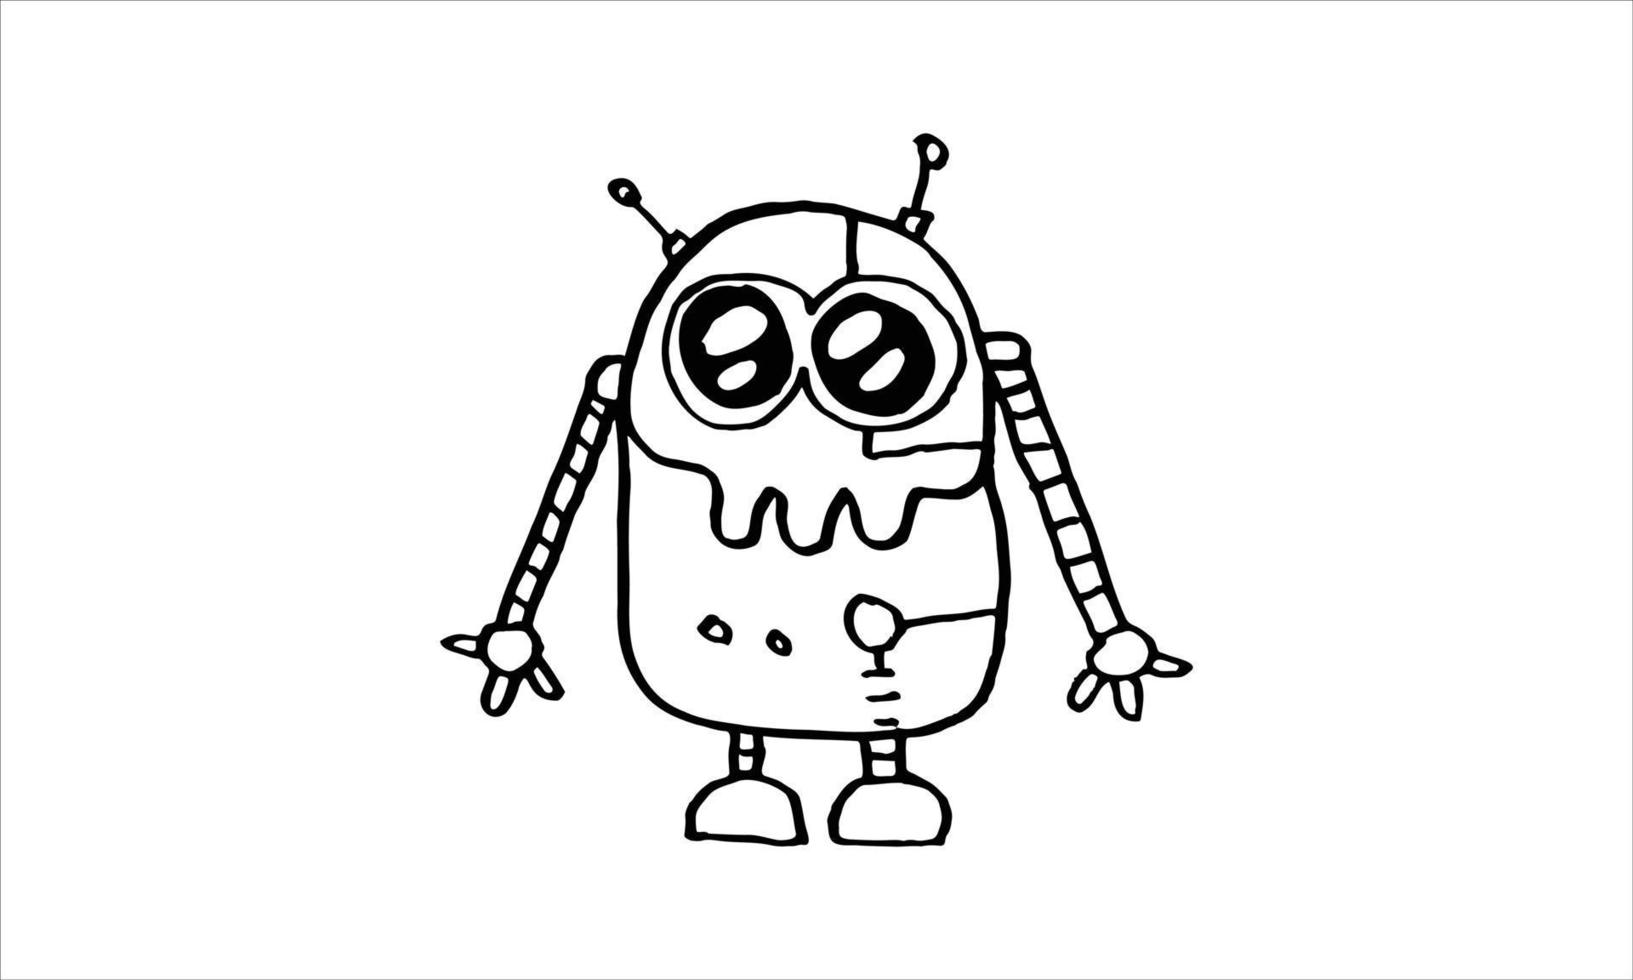 simpatico robot con occhi gonfi animato disegnato a mano. illustrazione di stile di doodle isolato su priorità bassa bianca. vettore di progettazione di macchine artificiali futuristiche moderne.